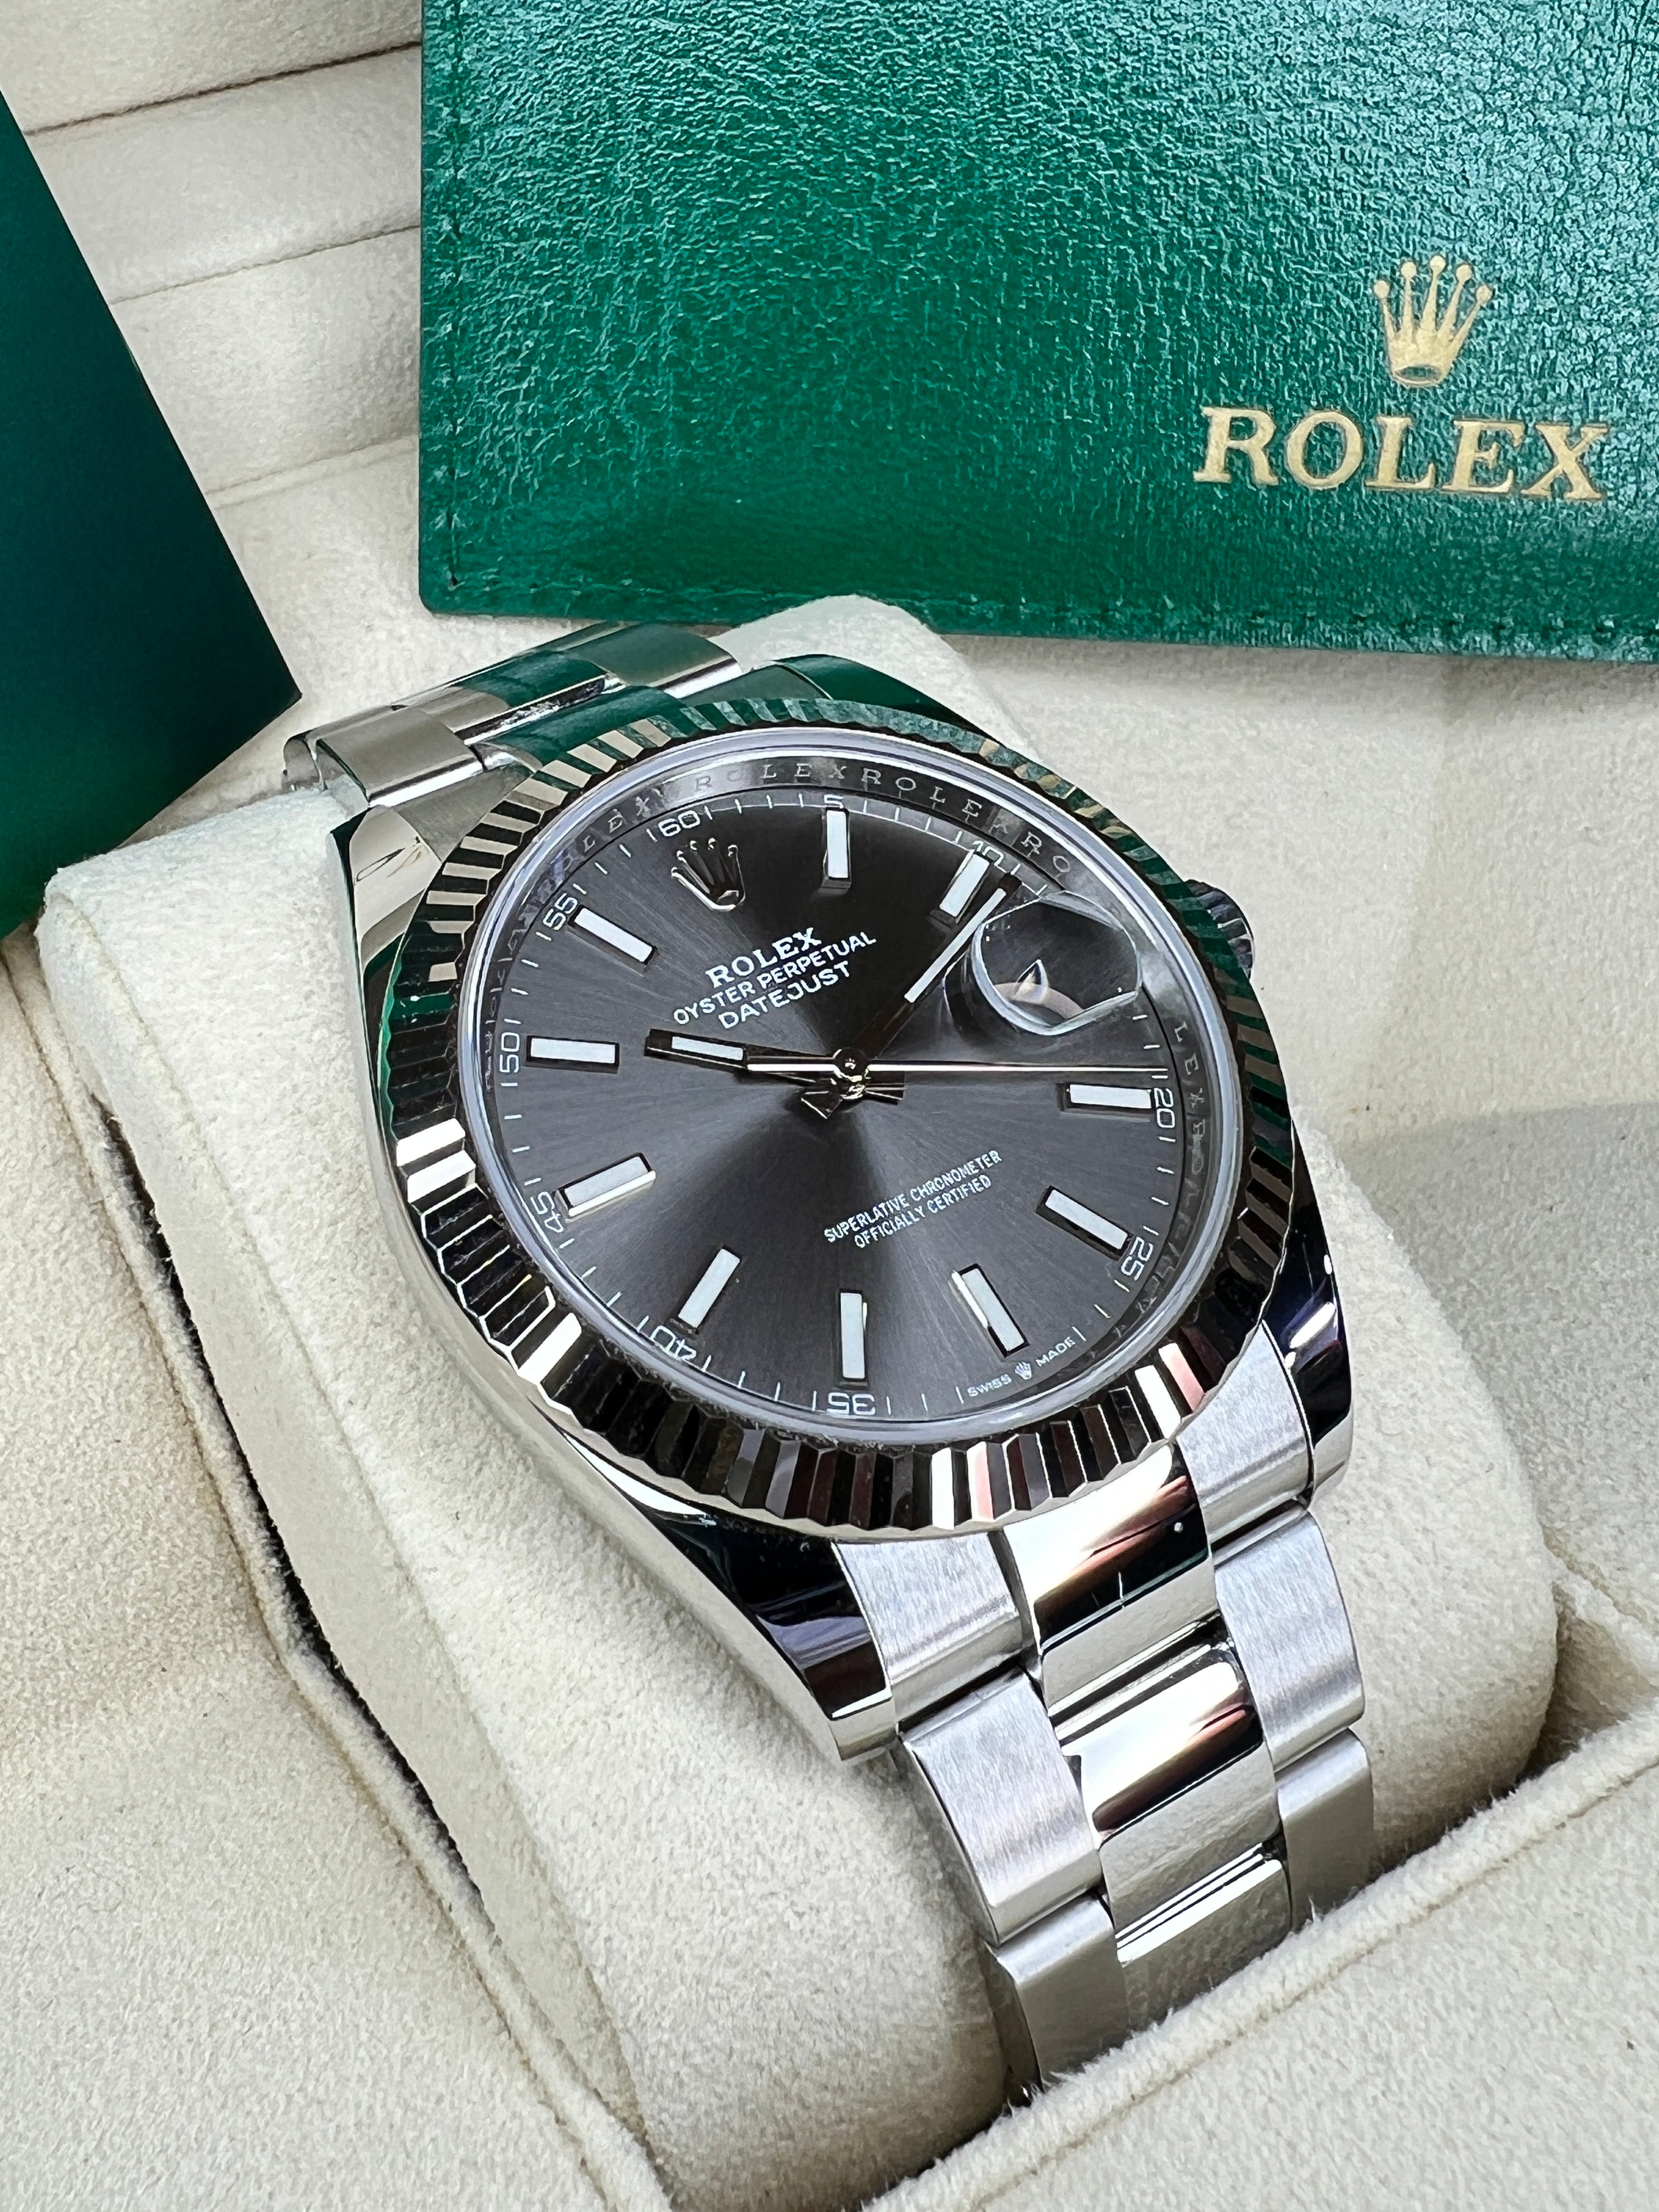 Rolex Datejust 41mm Watch 126334 dkrio